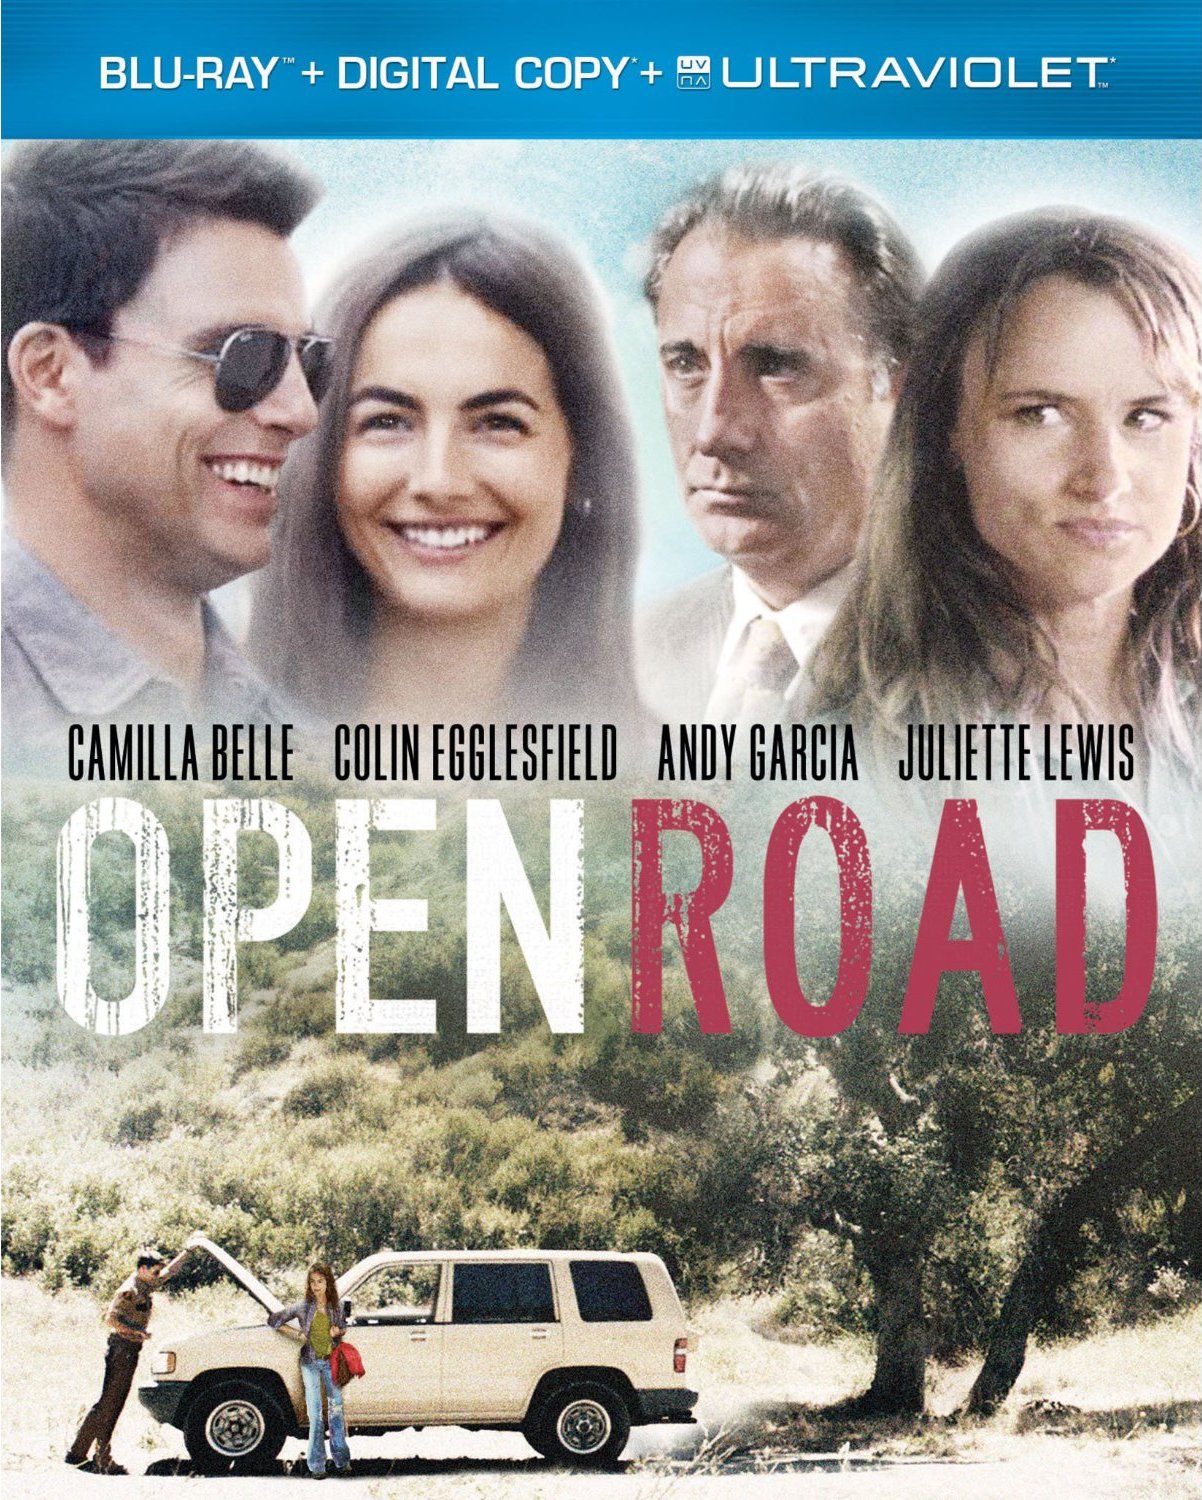 open road films